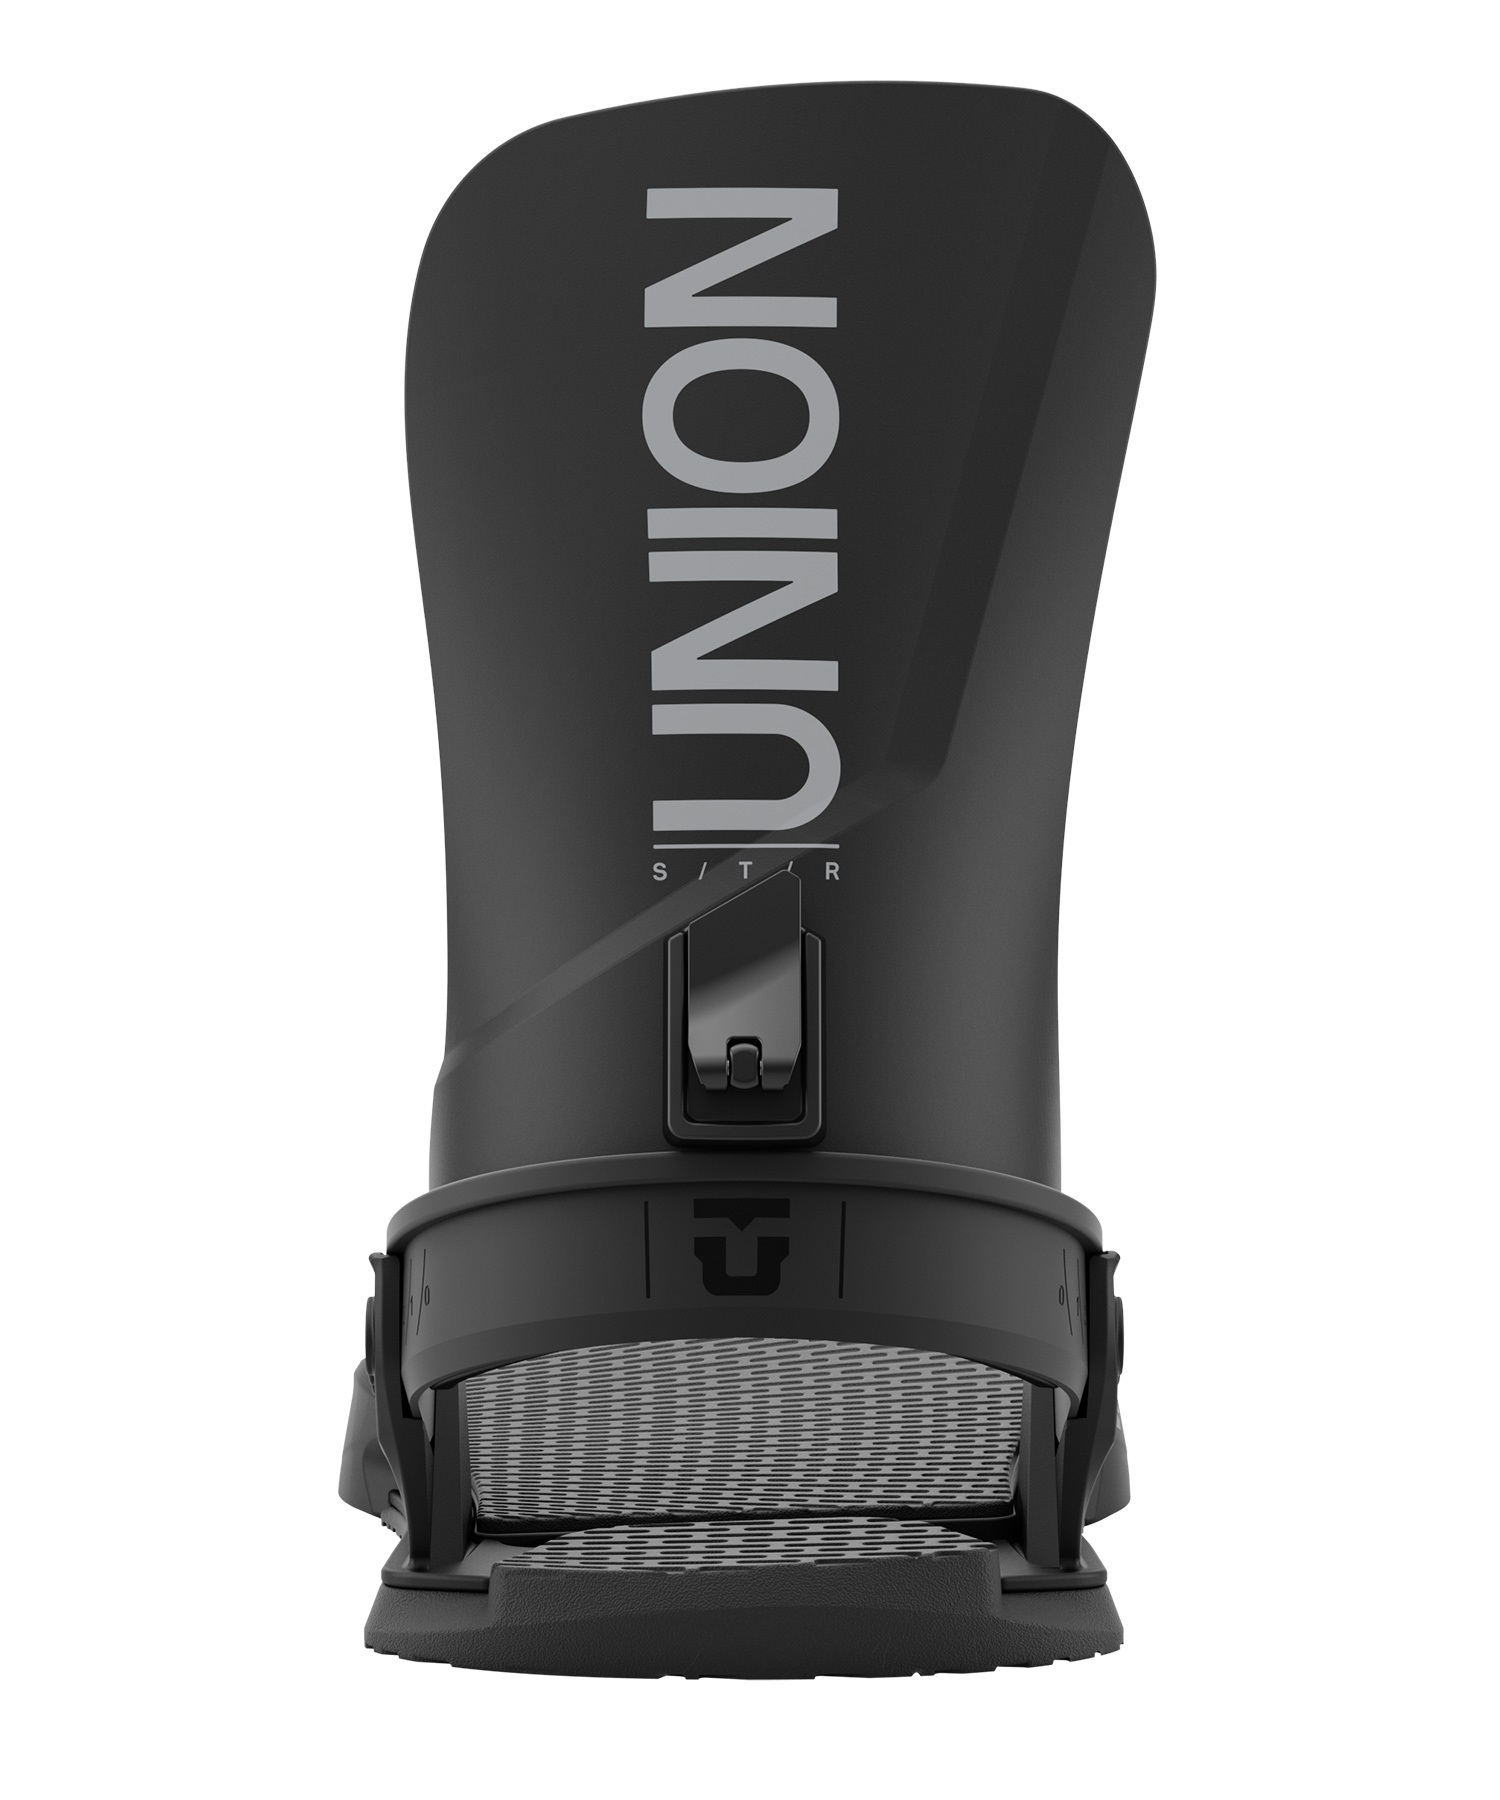 【早期購入】UNION ユニオン スノーボード バインディング ビンディング メンズ STR ムラサキスポーツ 24-25モデル LL A19(WHITE-S)